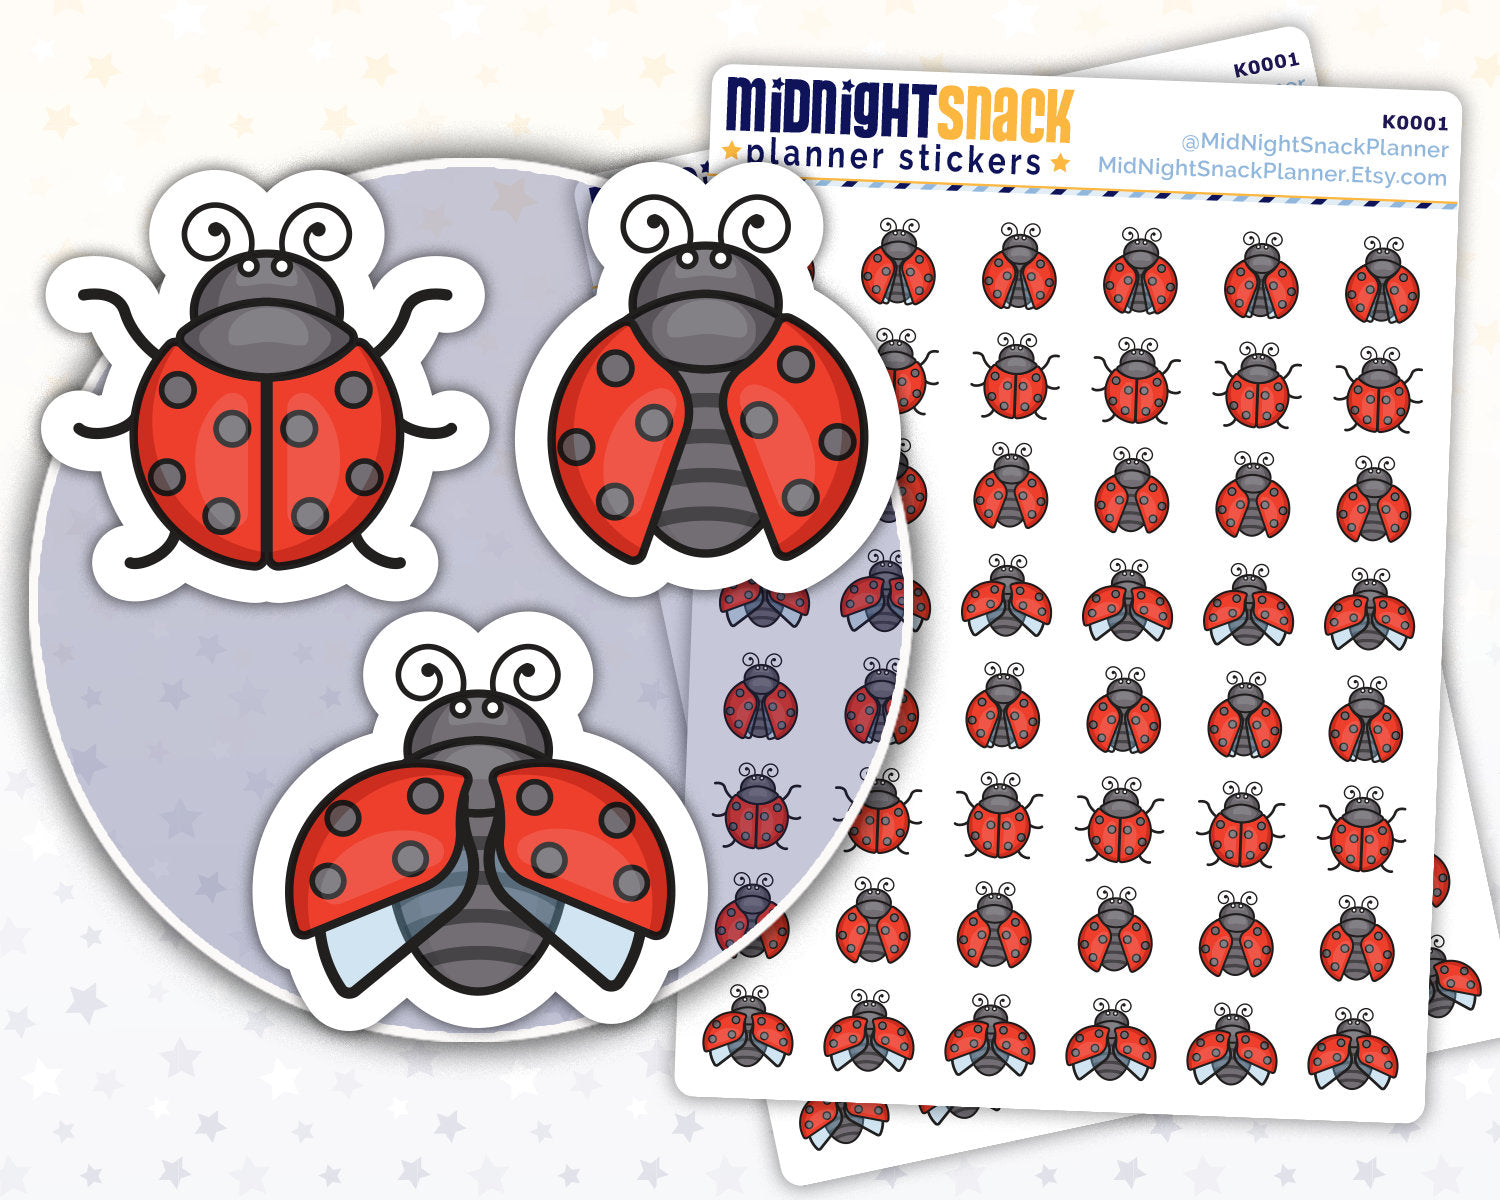 Ladybug Icon: Spring Garden Planner Sticker Midnight Snack Planner